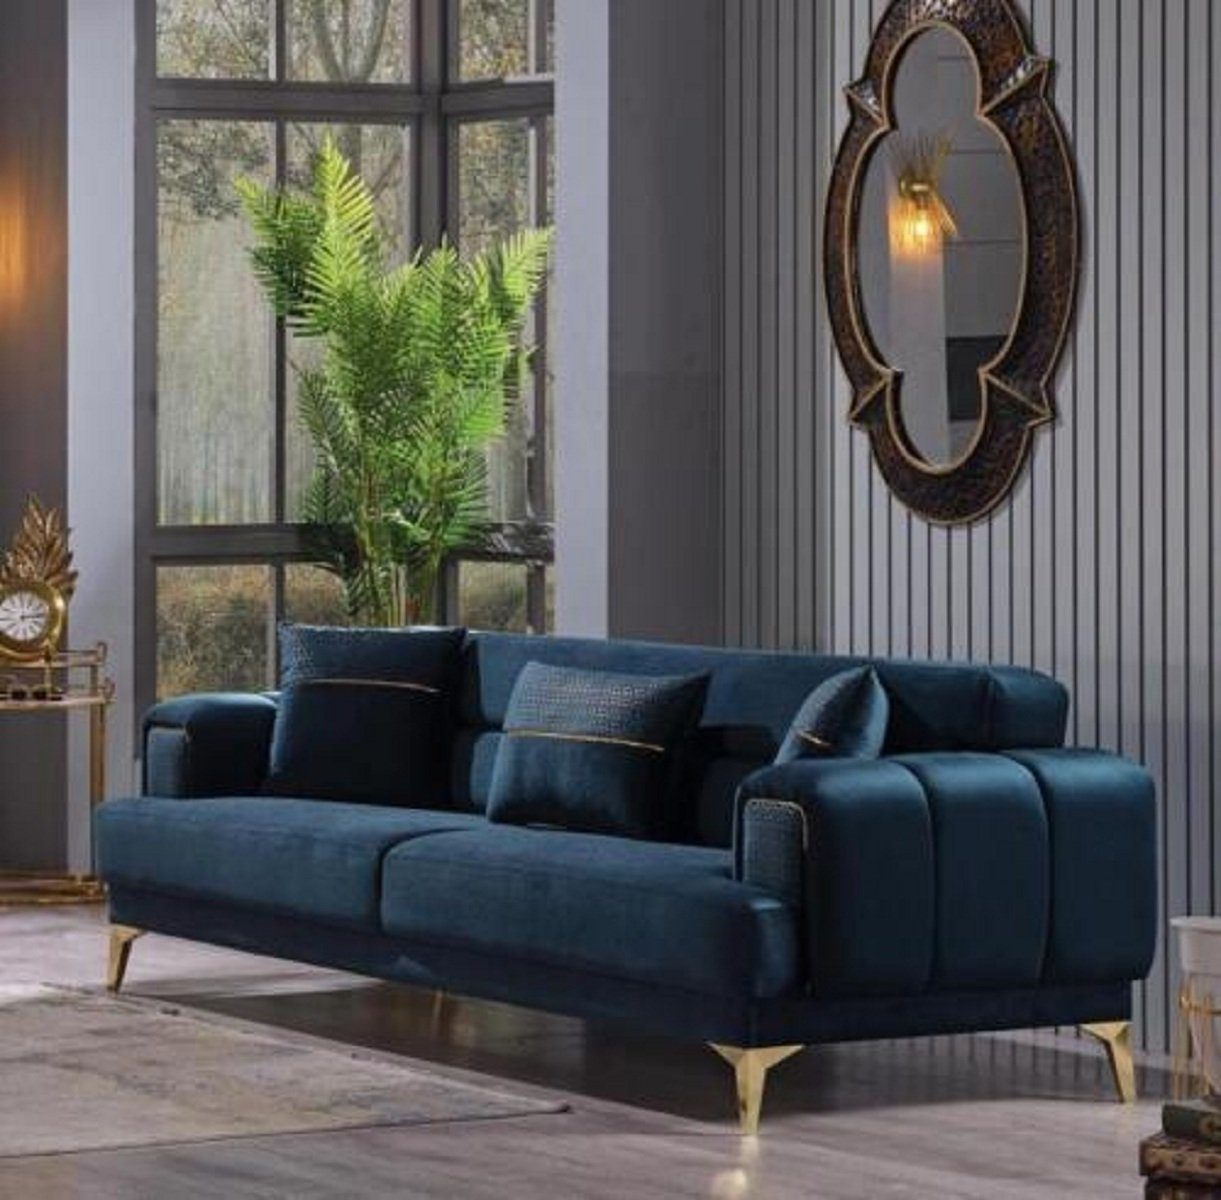 JVmoebel 3-Sitzer Blauer Wohnzimmermöbel in Möbel Teile, Made Luxus Textilsofas, 1 Polster Couch Europa 3-Sitzer